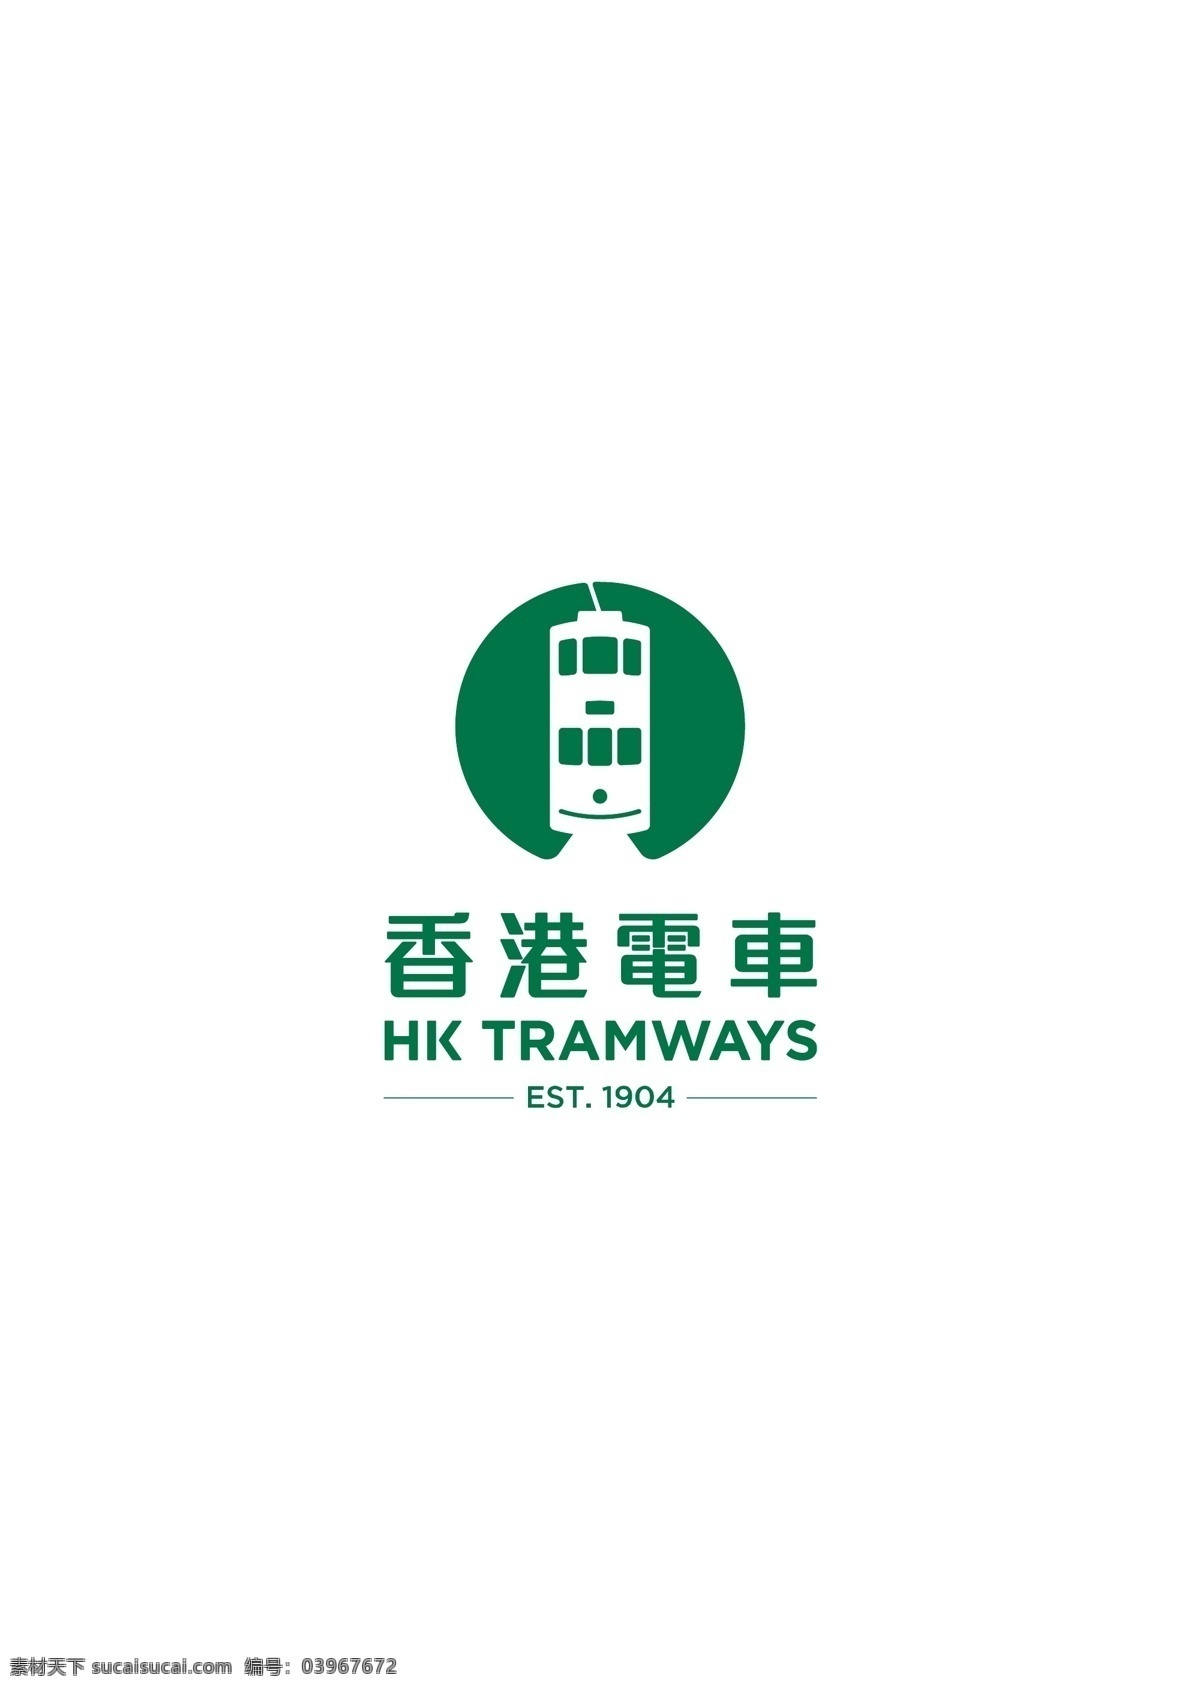 香港 电车 logo 标志 香港电车 logo标志 叮叮车 logo下载 标志下载 logo设计